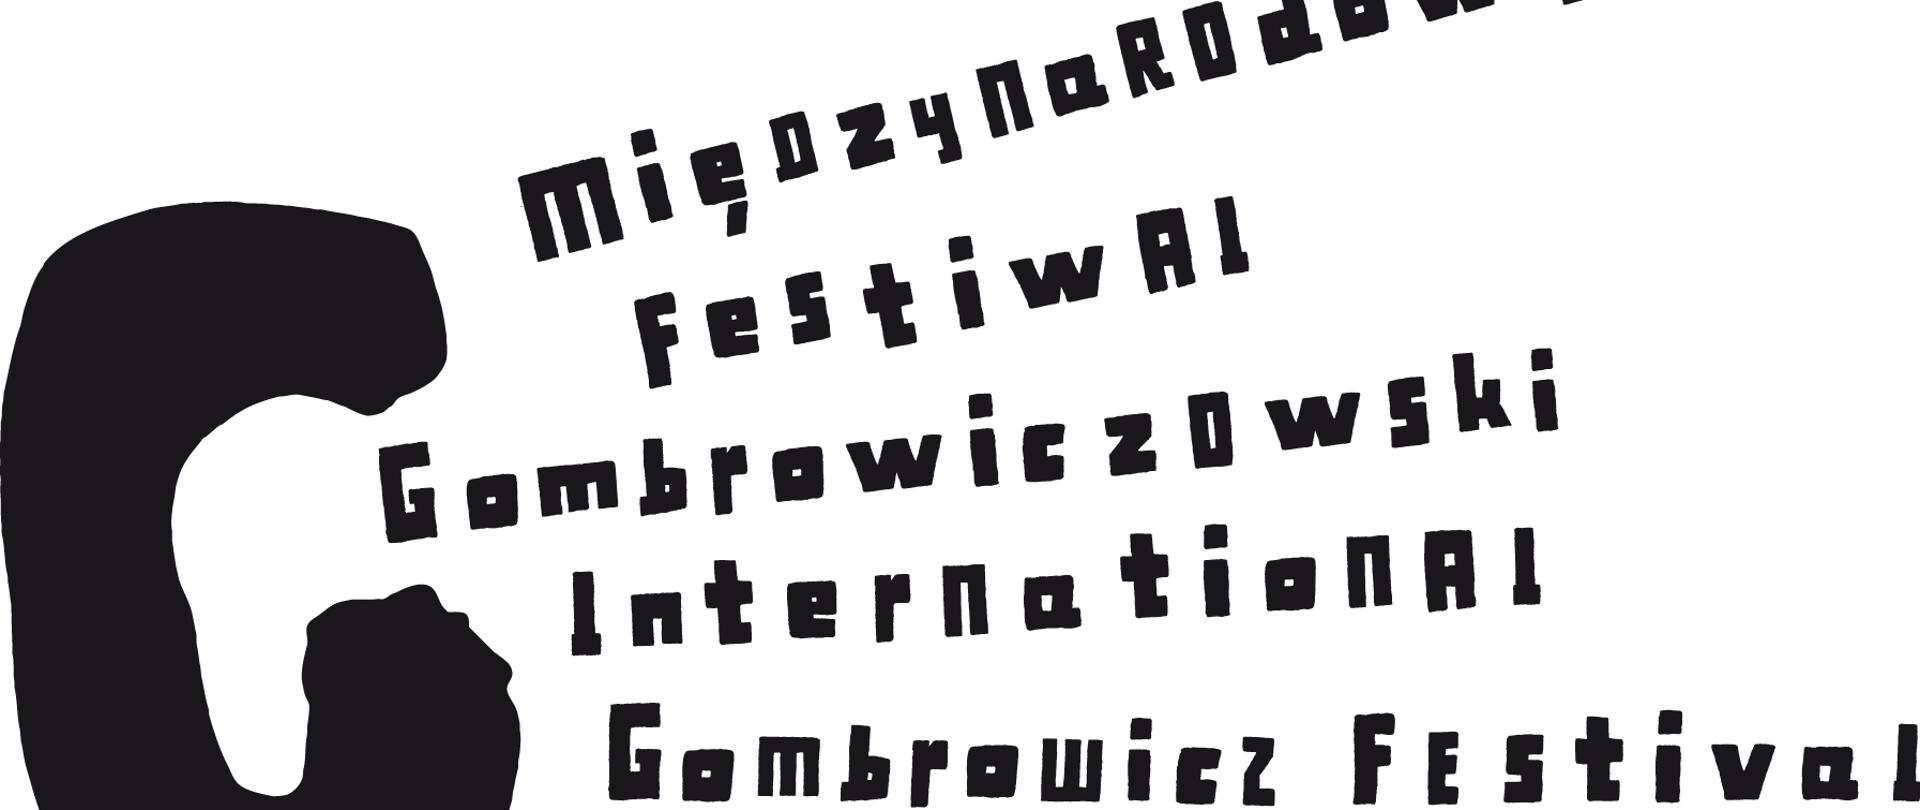 Gombrowicz w Radomiu - XV Międzynarodowy Festiwal Gombrowiczowski 